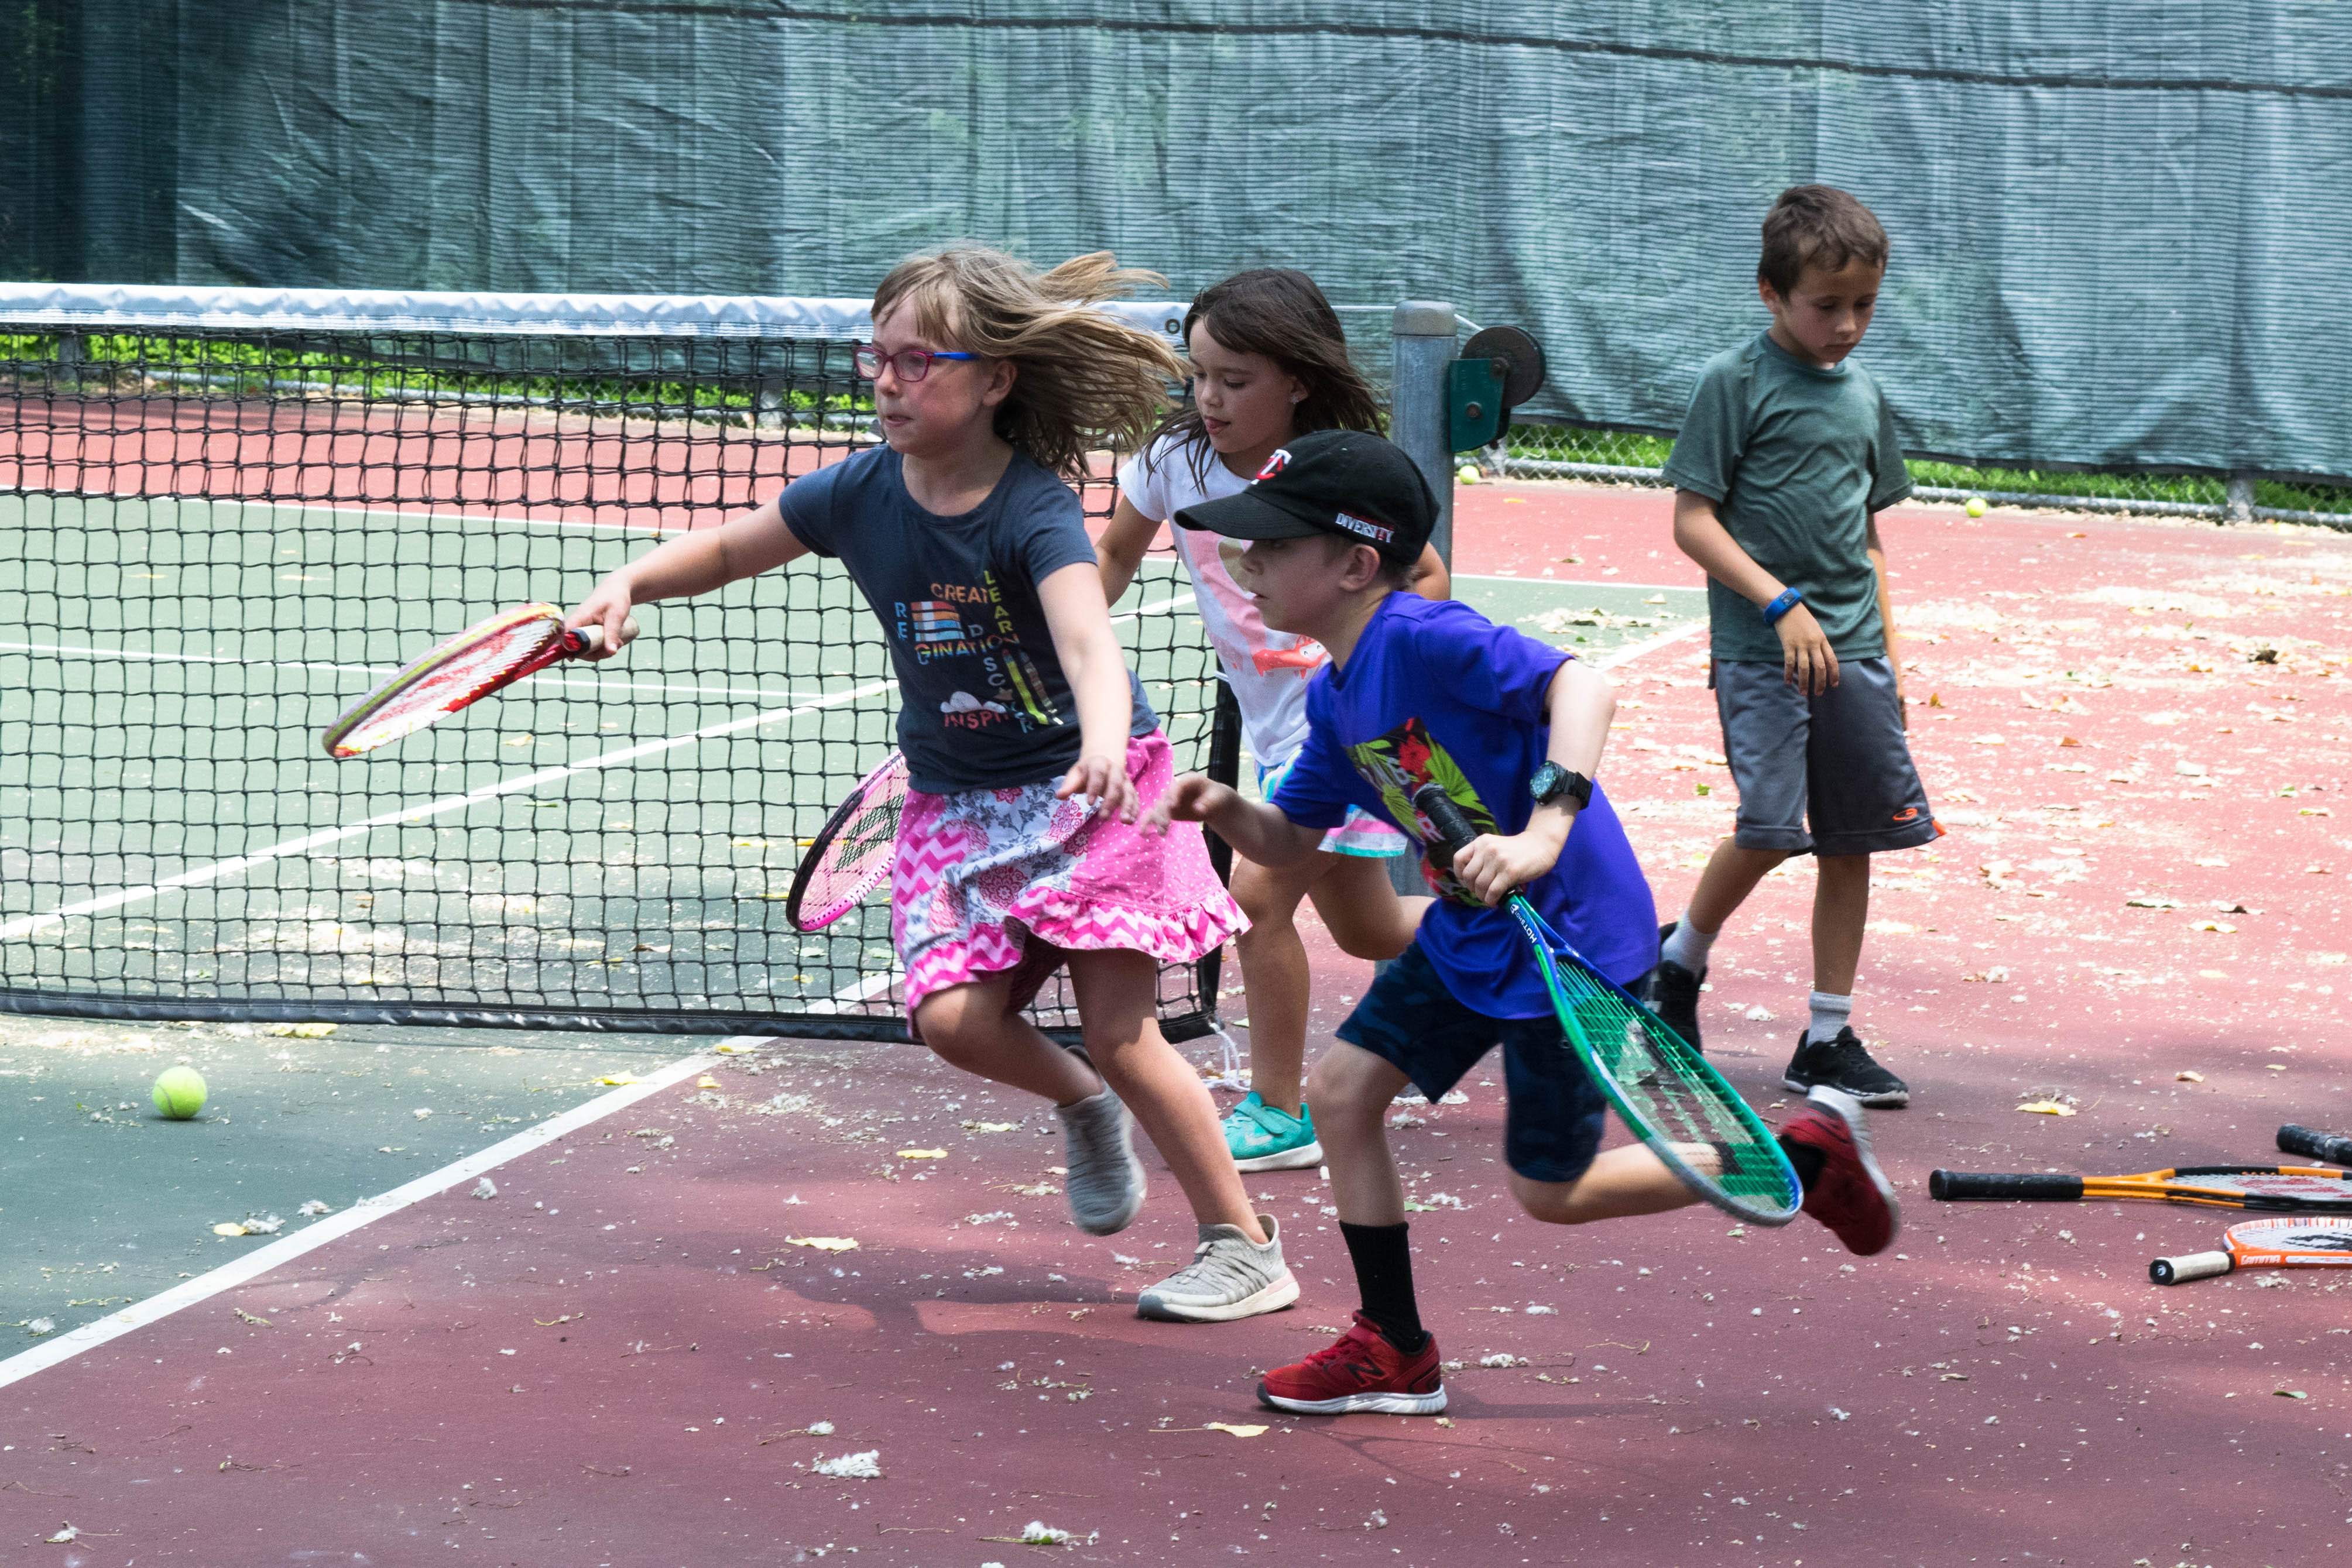 Four children running on tennis court